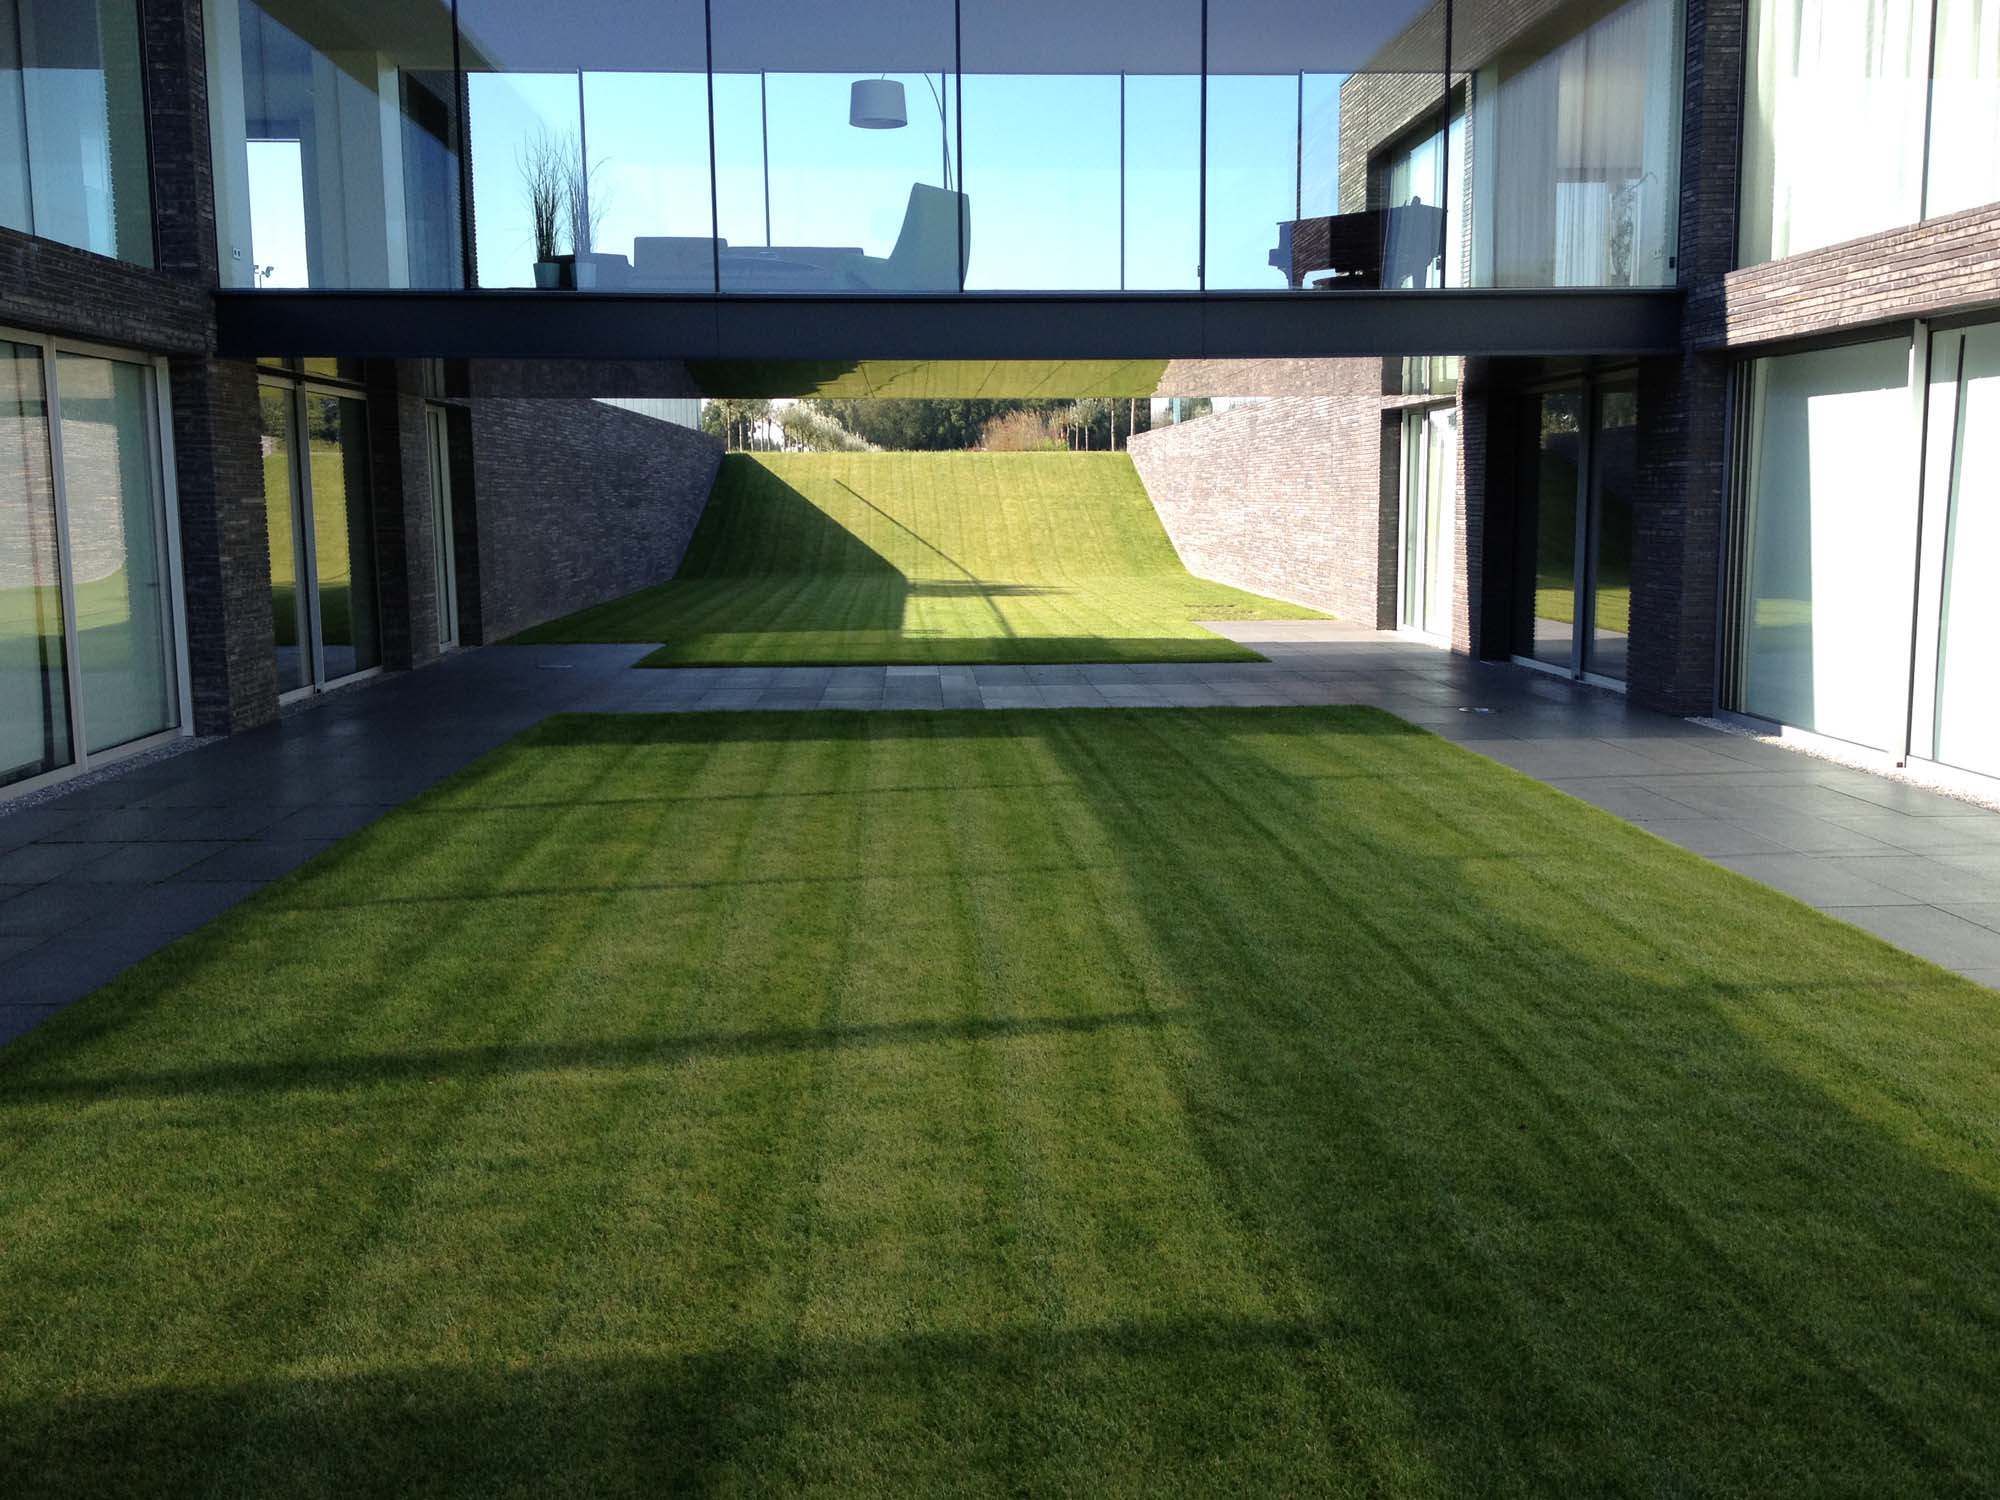 Hoveniersbedrijf G.Weultjes Villa tuin Leusden moderne tuin gazon.jpg